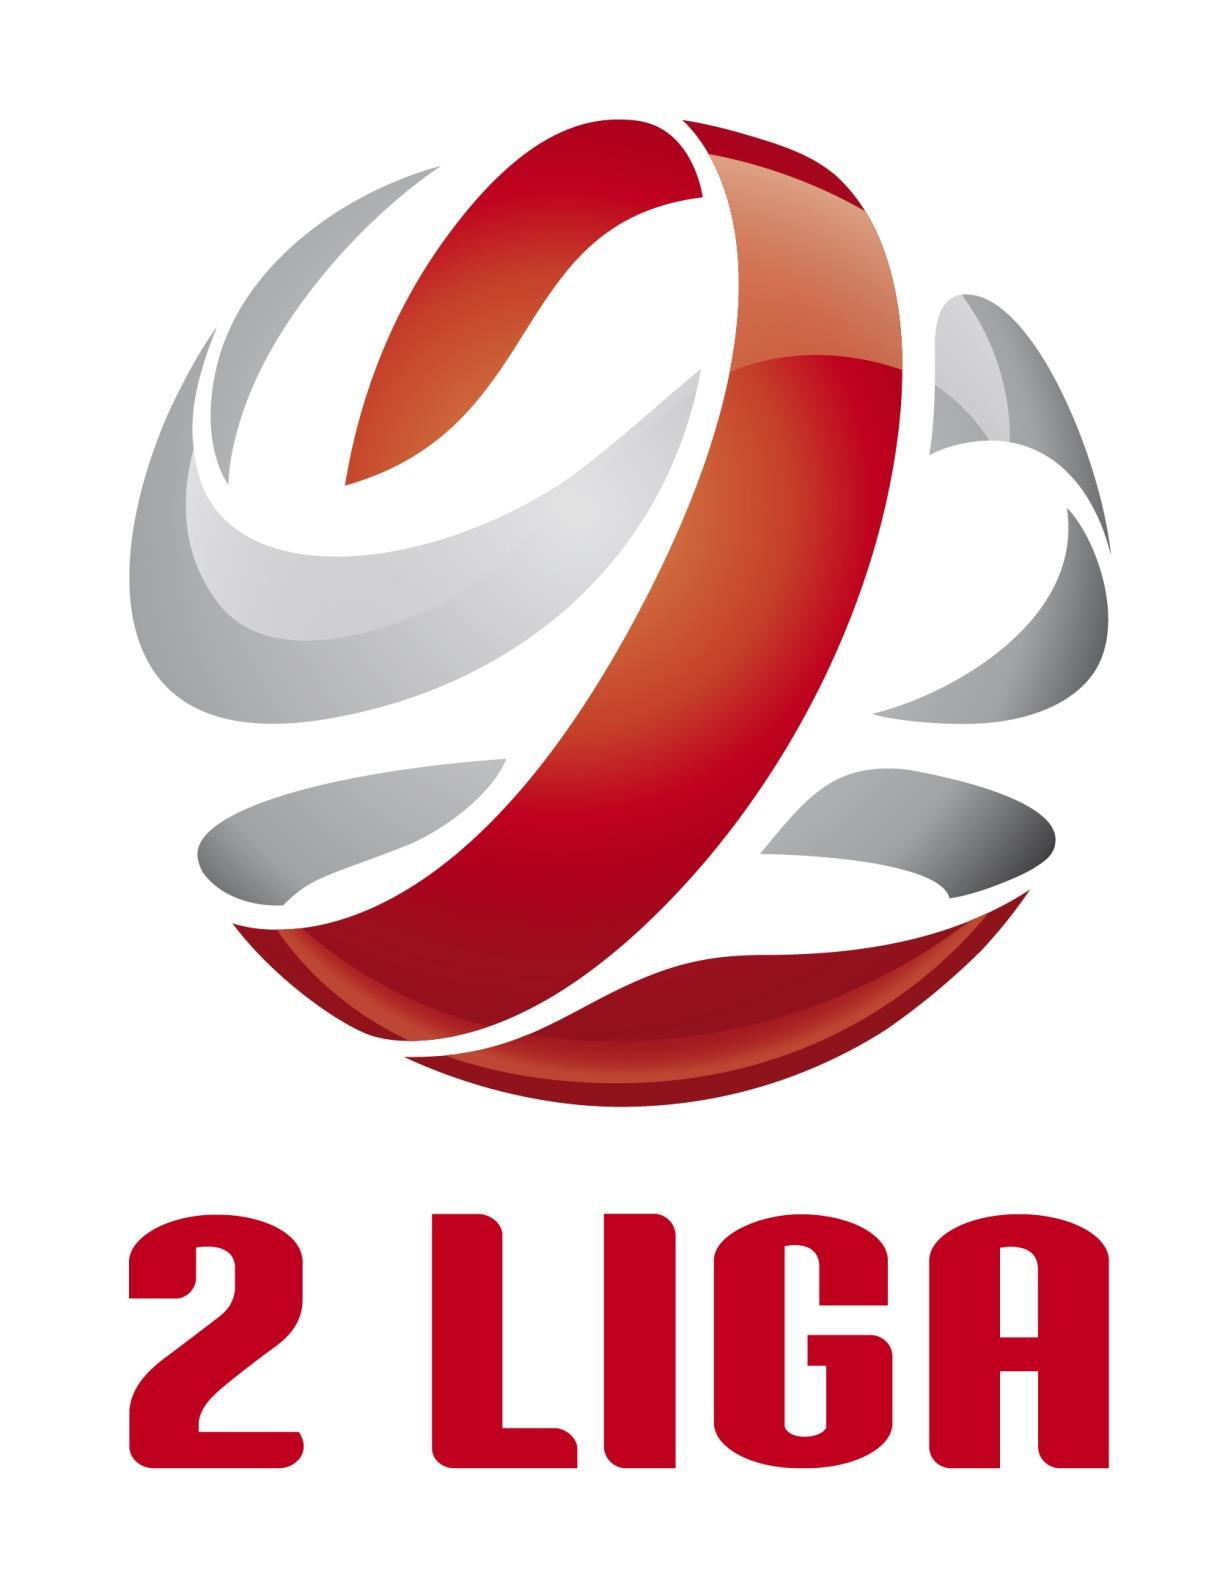 Załącznik nr 2 do Uchwały nr V/83 z dnia 26 maja 2014 roku Zarządu Polskiego Związku Piłki